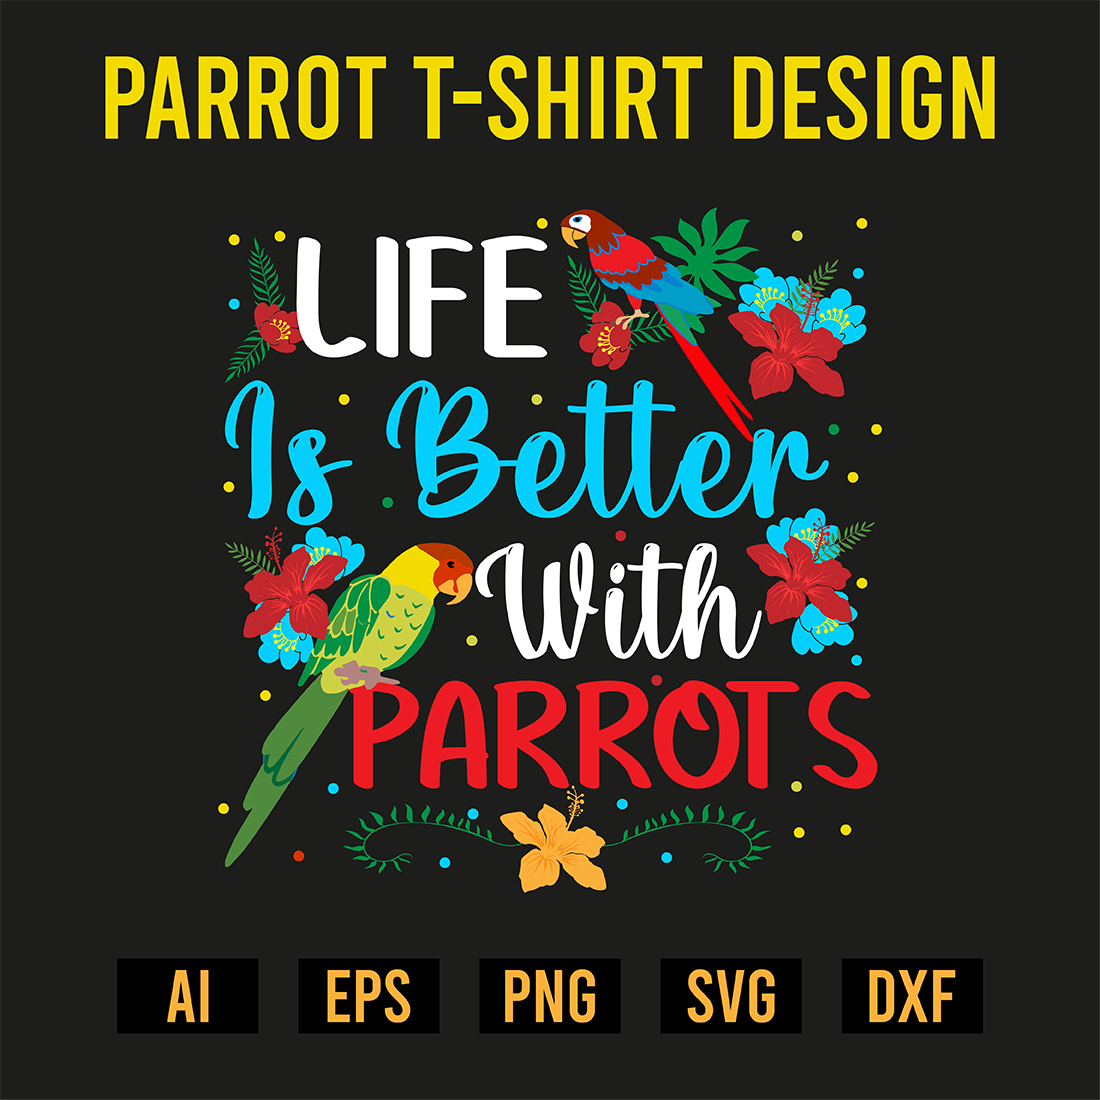 Parrot T-Shirt Design preview image.